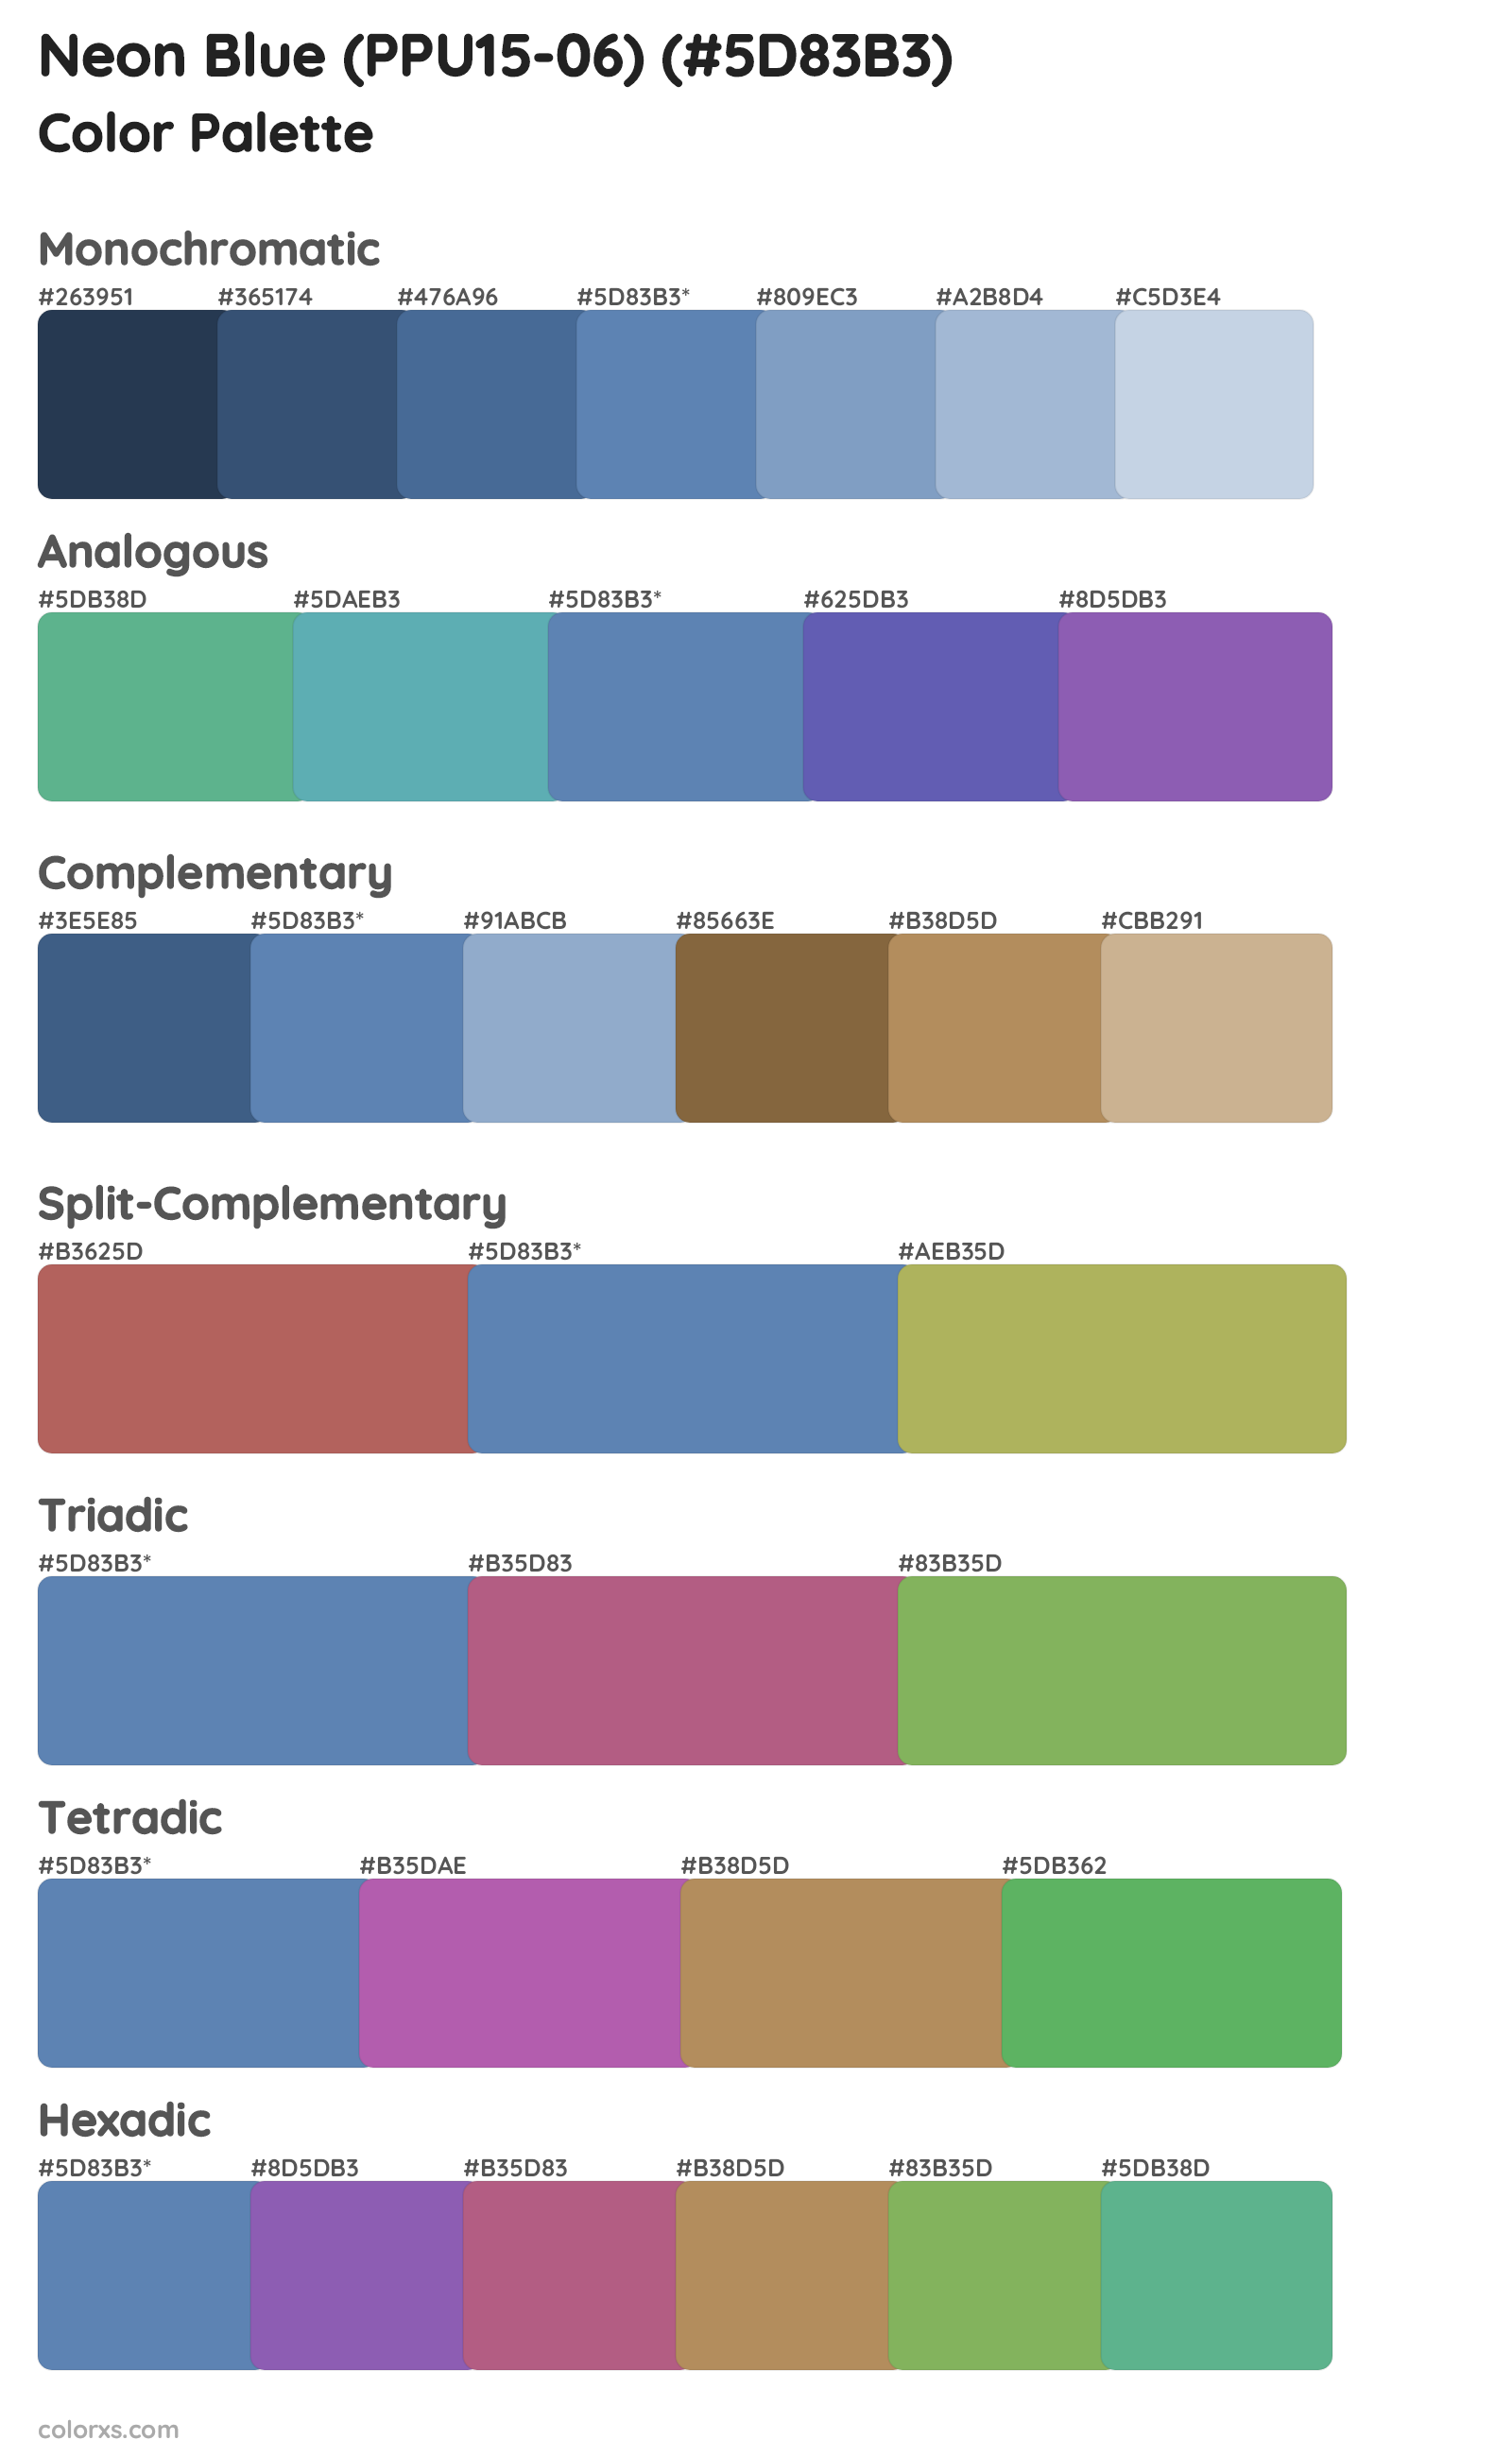 Neon Blue (PPU15-06) Color Scheme Palettes